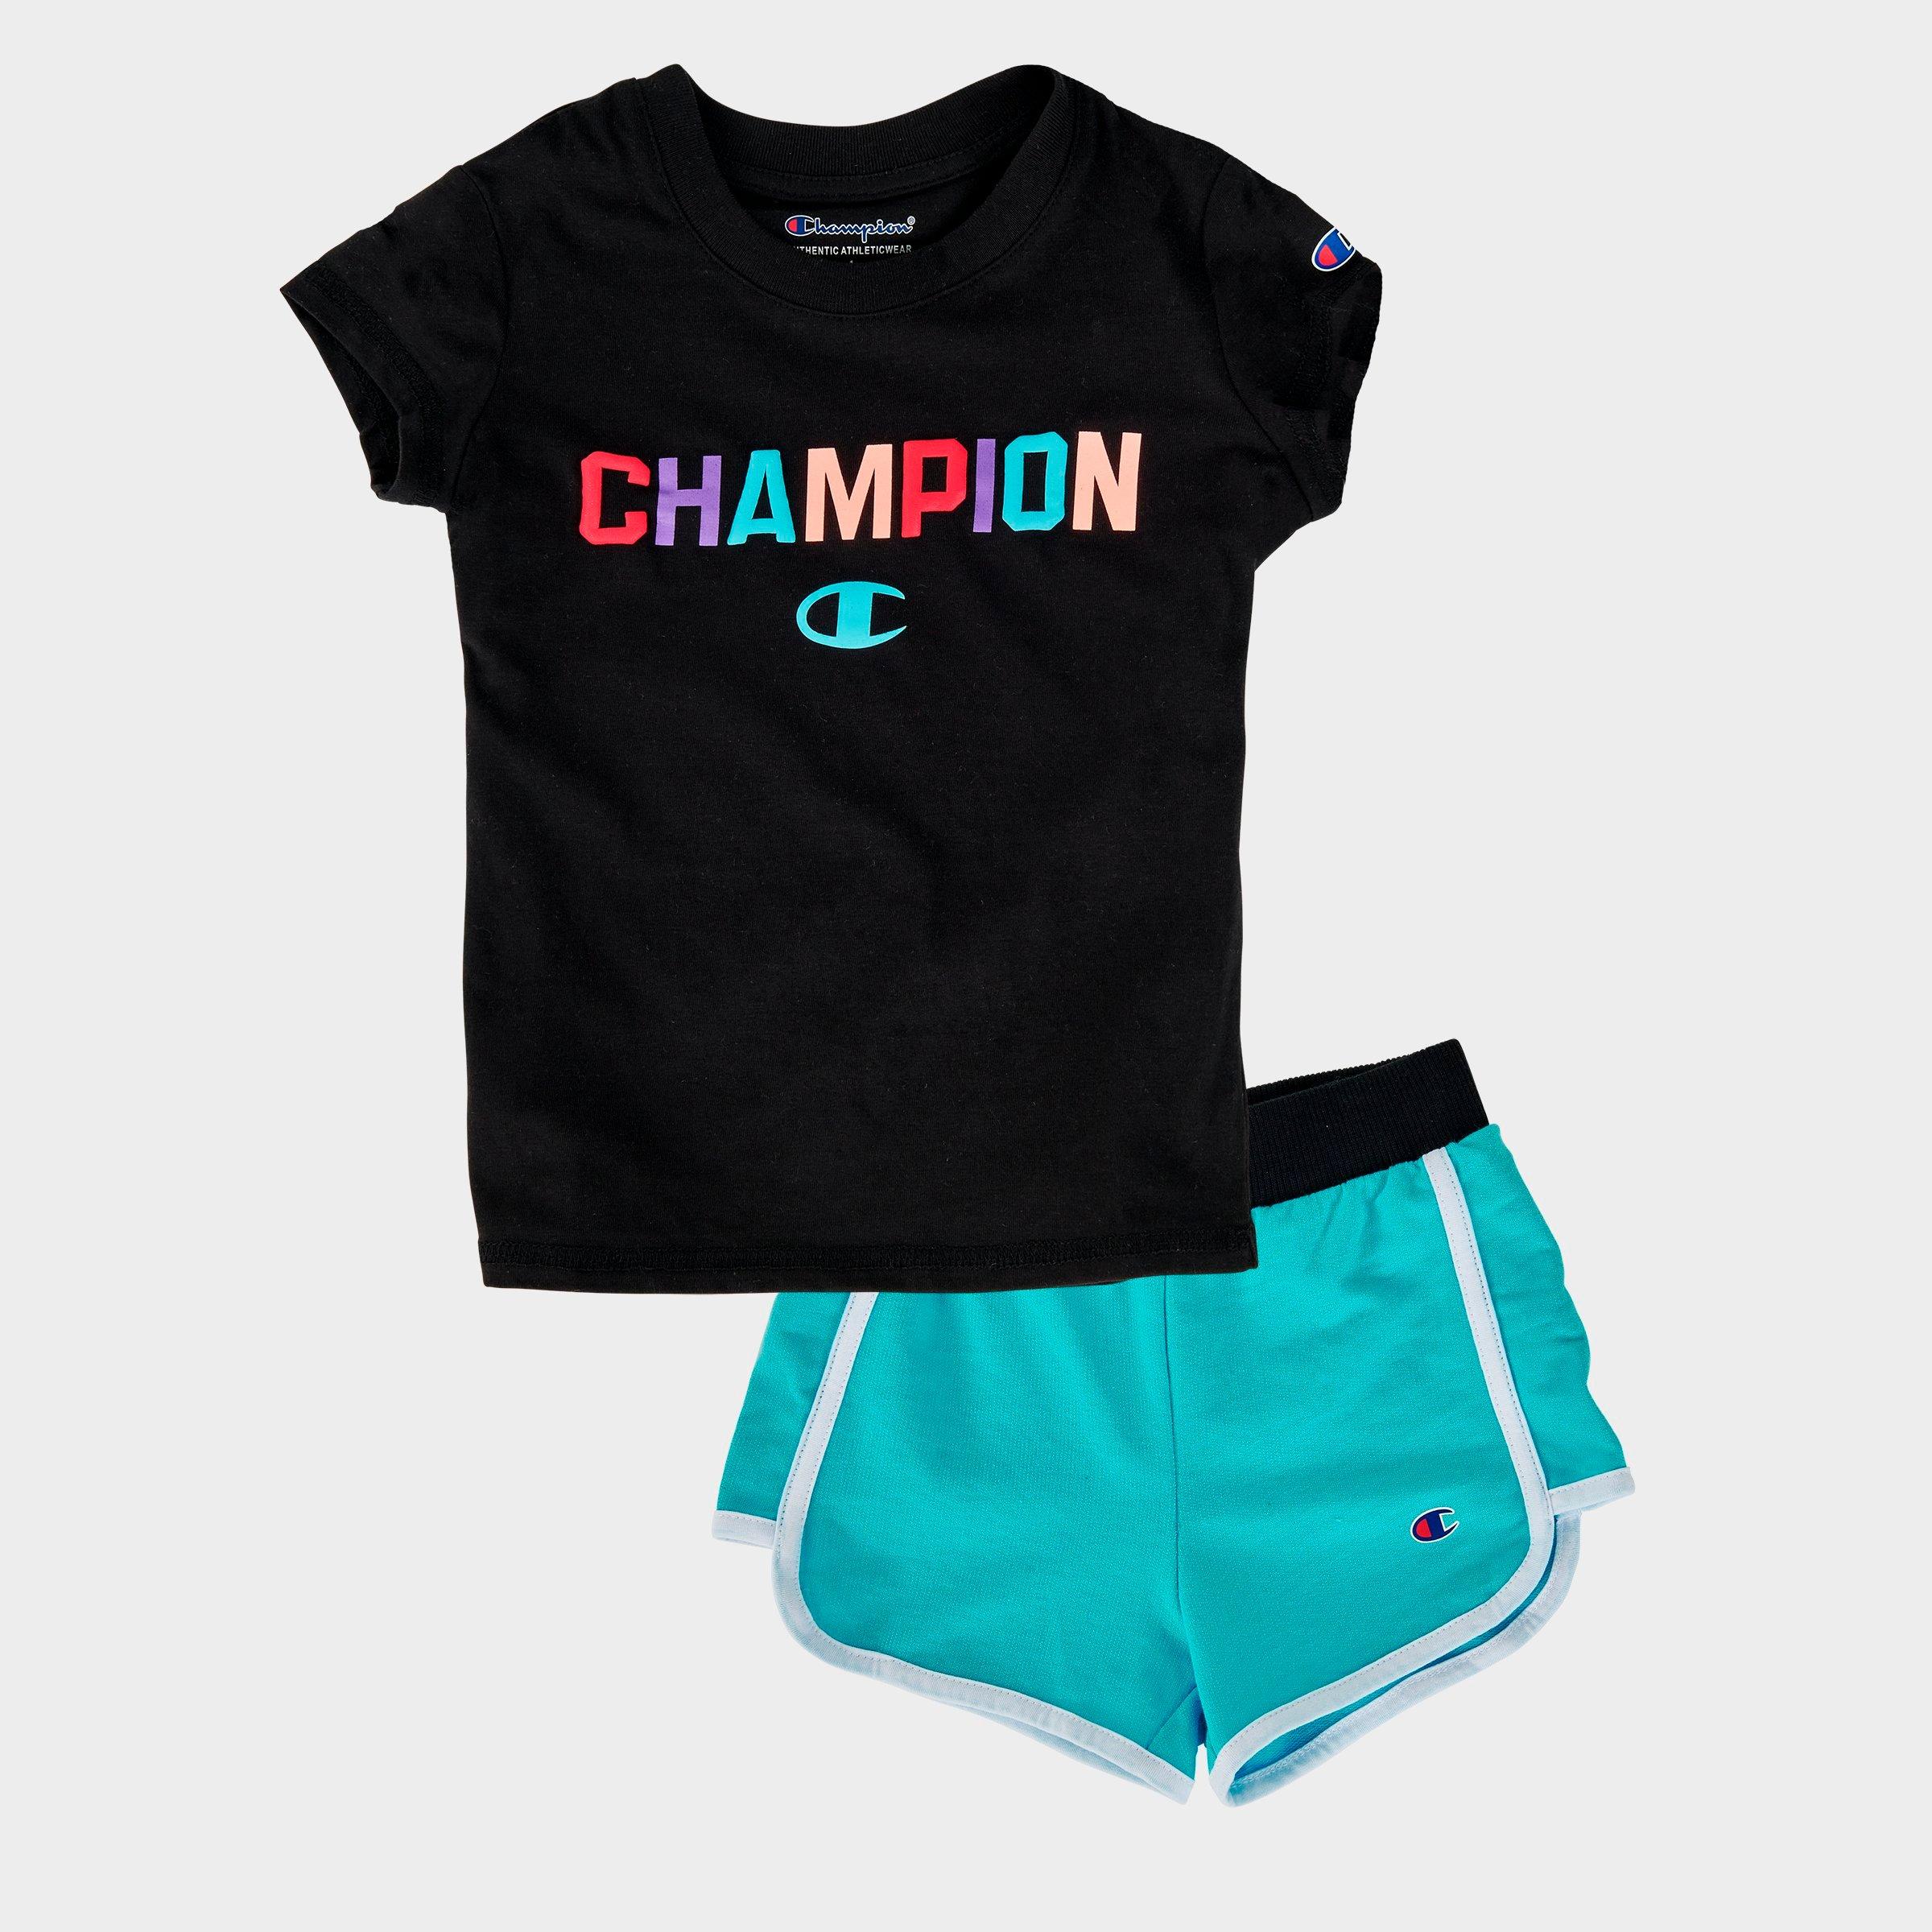 champion t shirt and shorts set